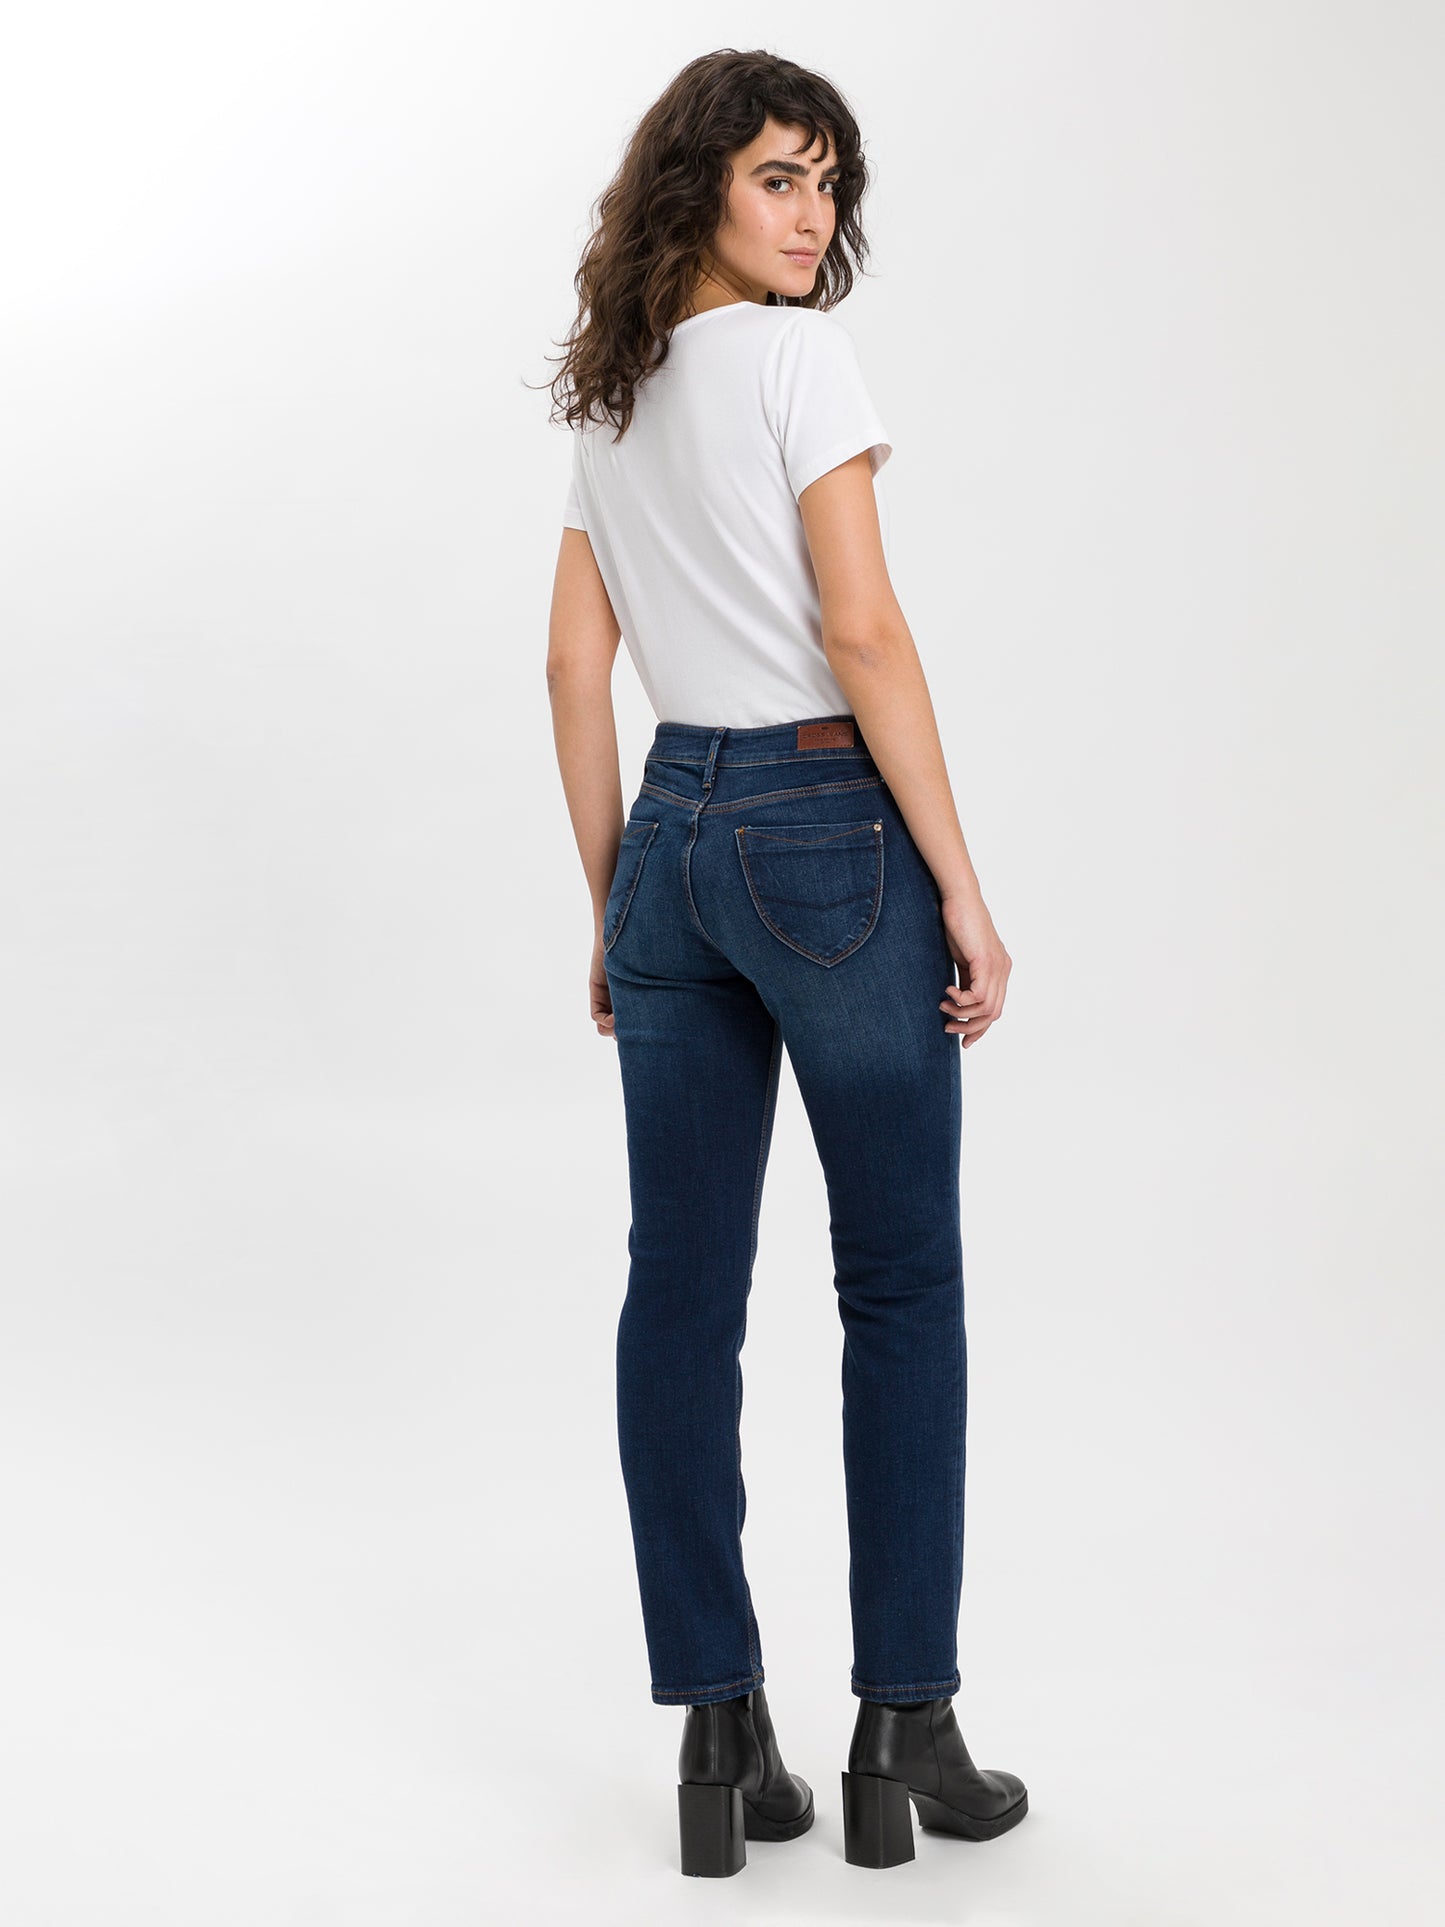 Rose Damen Jeans Regular Fit High Waist dunkelblau